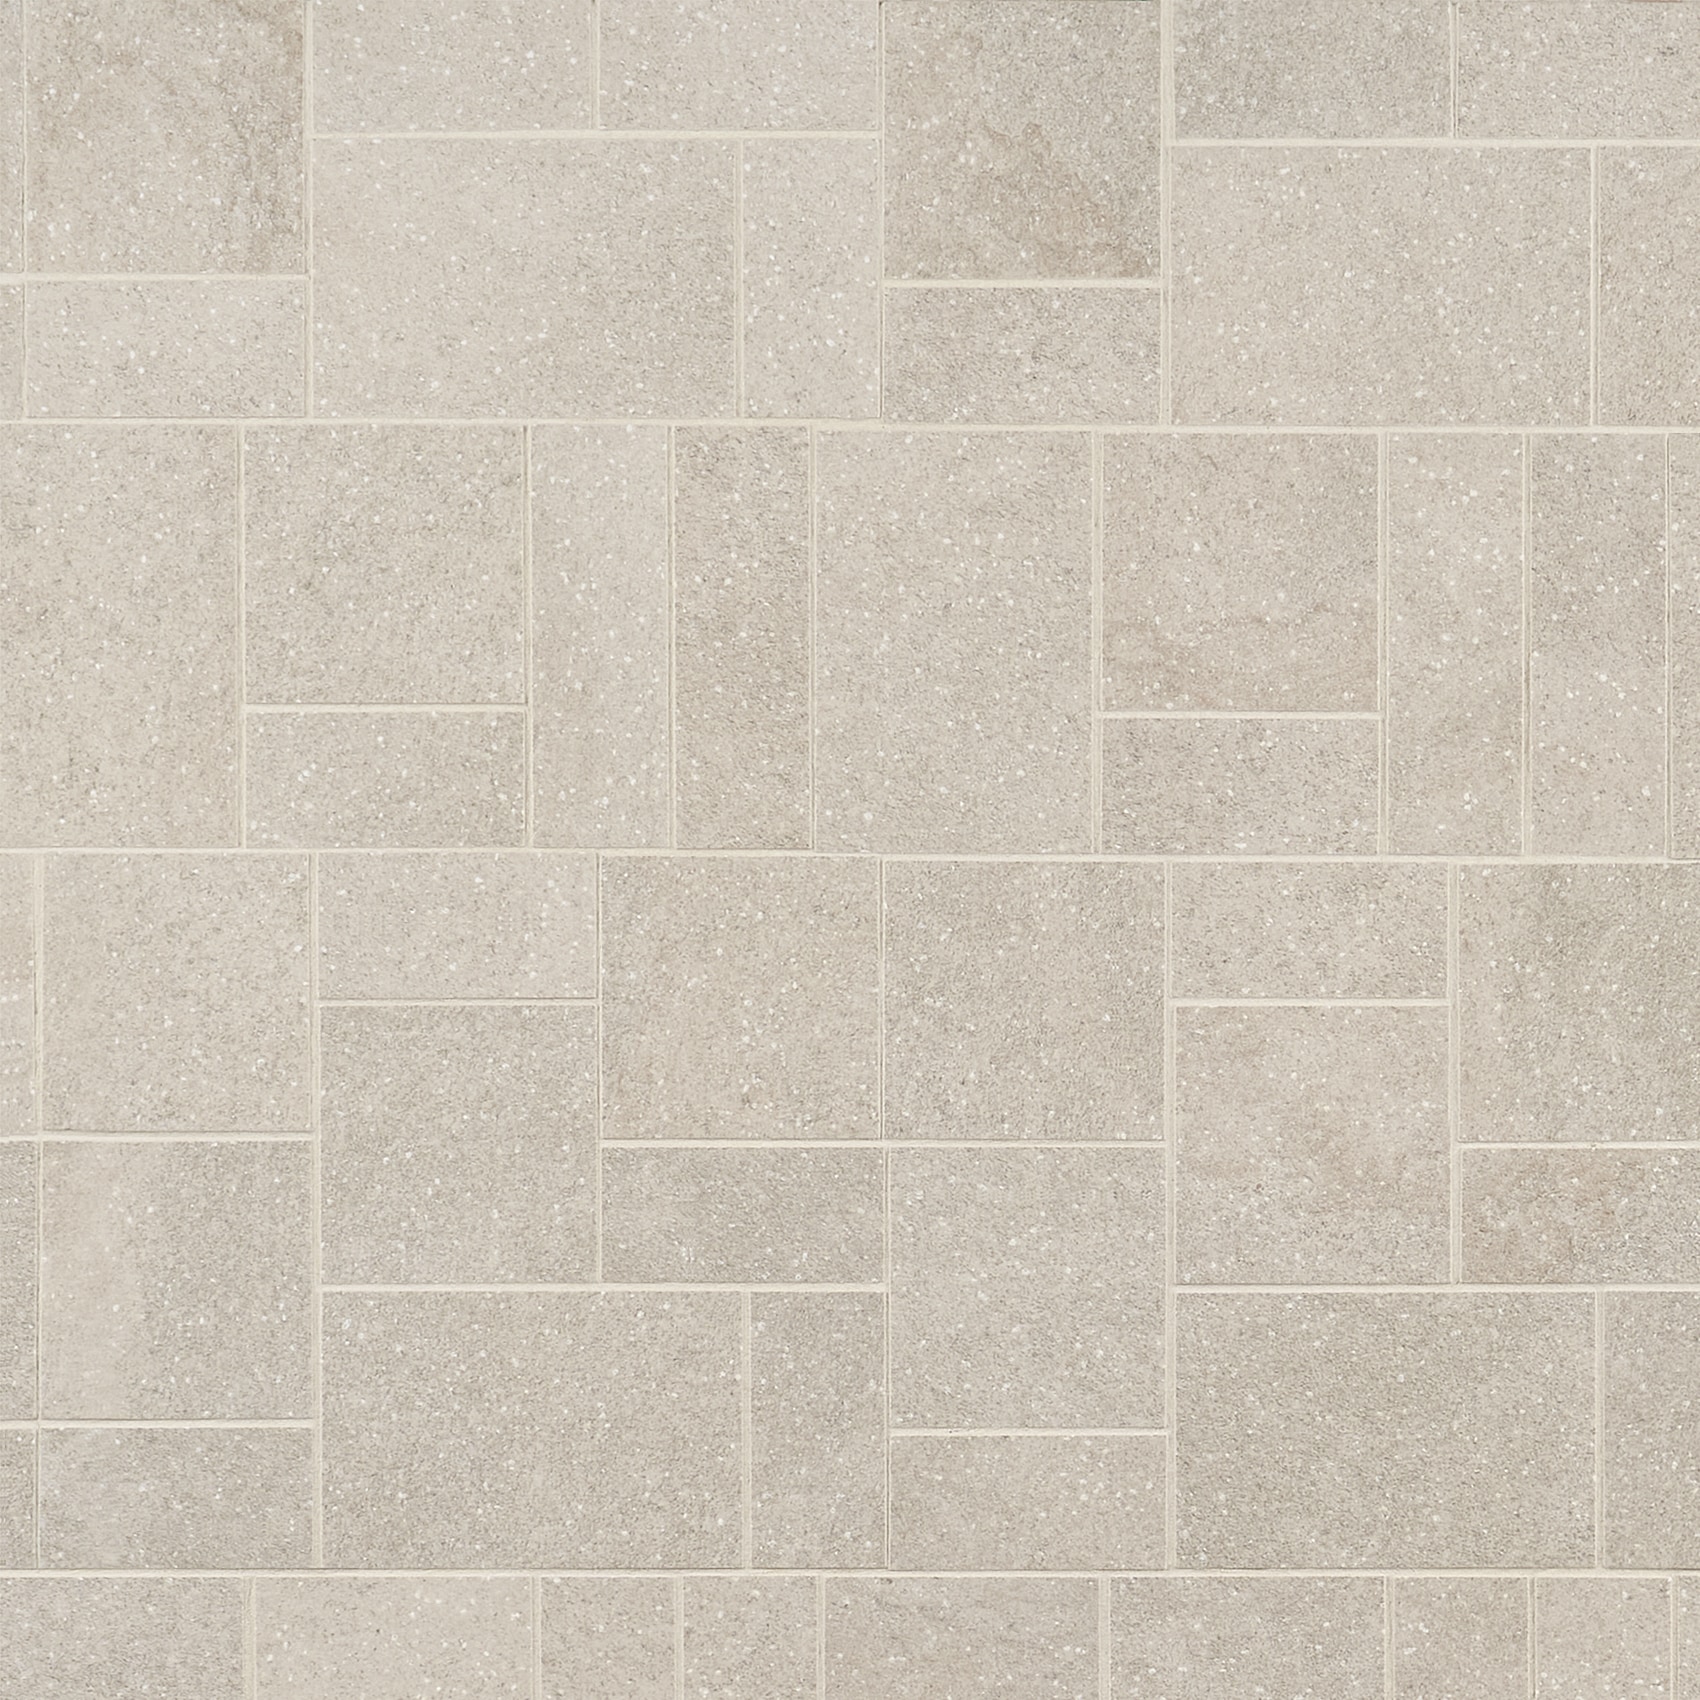 Faux Limestone Cork Wall Tiles